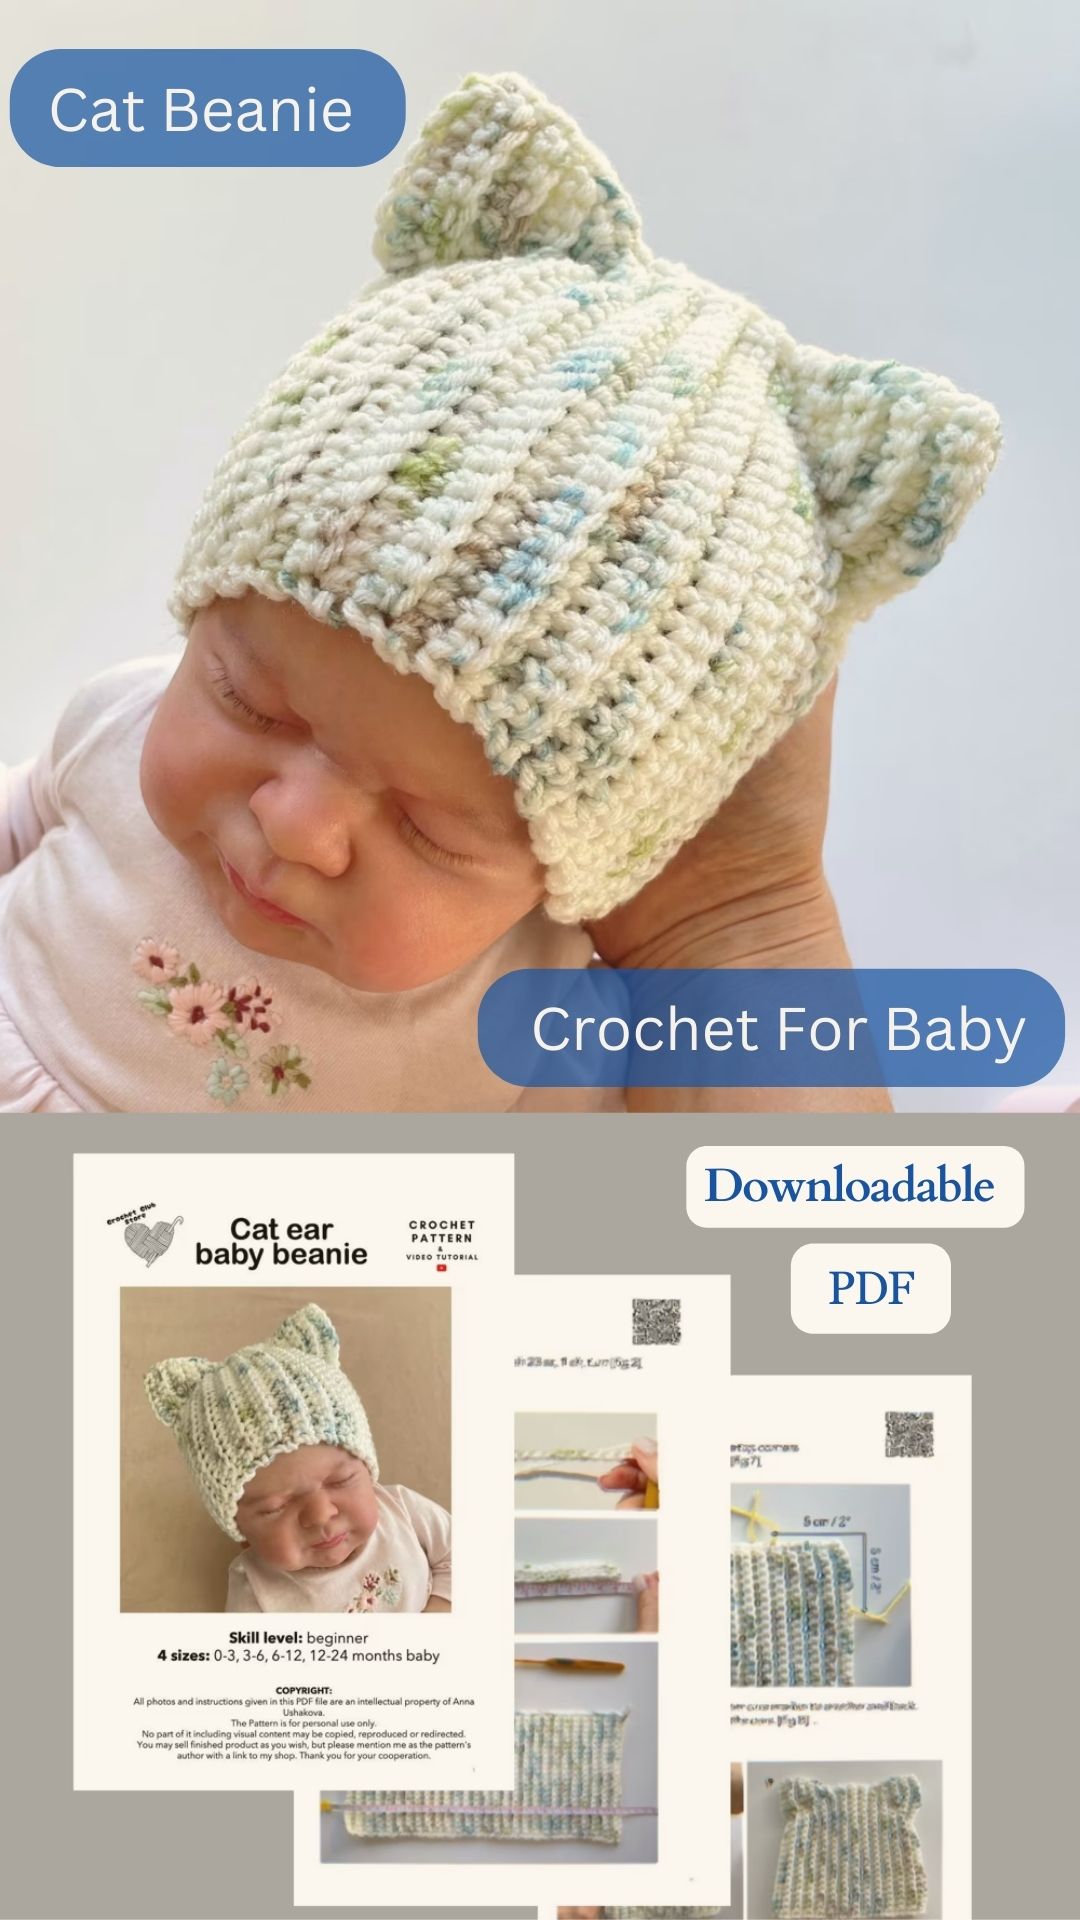 cat beanie crochet for baby